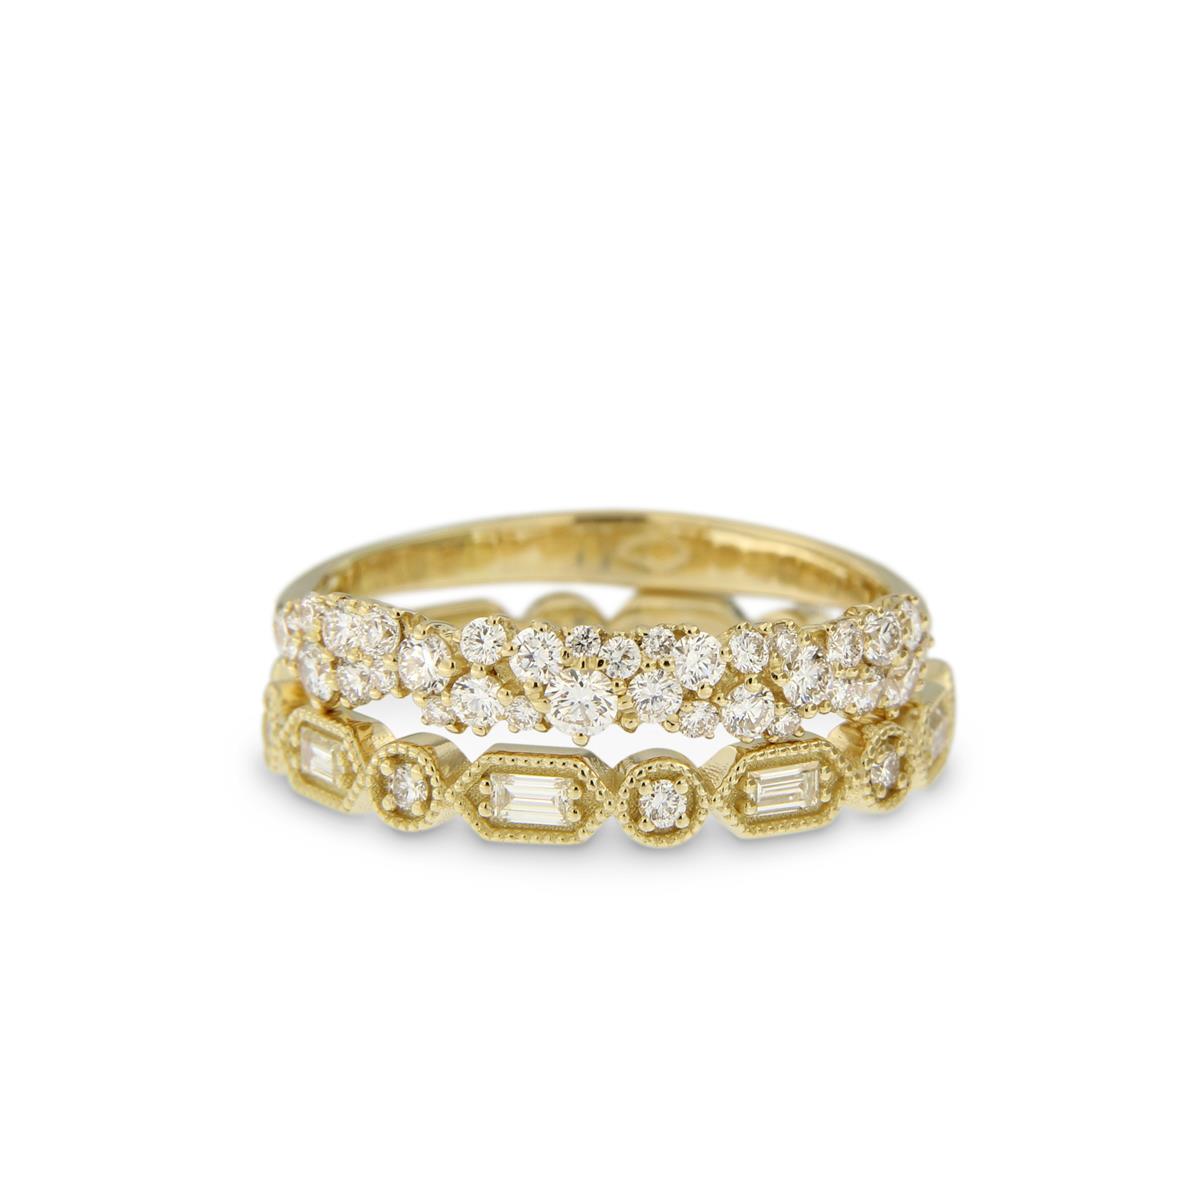 Katie g. Jewellery - Massgefertigte Ringe mit brillanten und Baguette Diamanten aus 14kt. Champagnergold